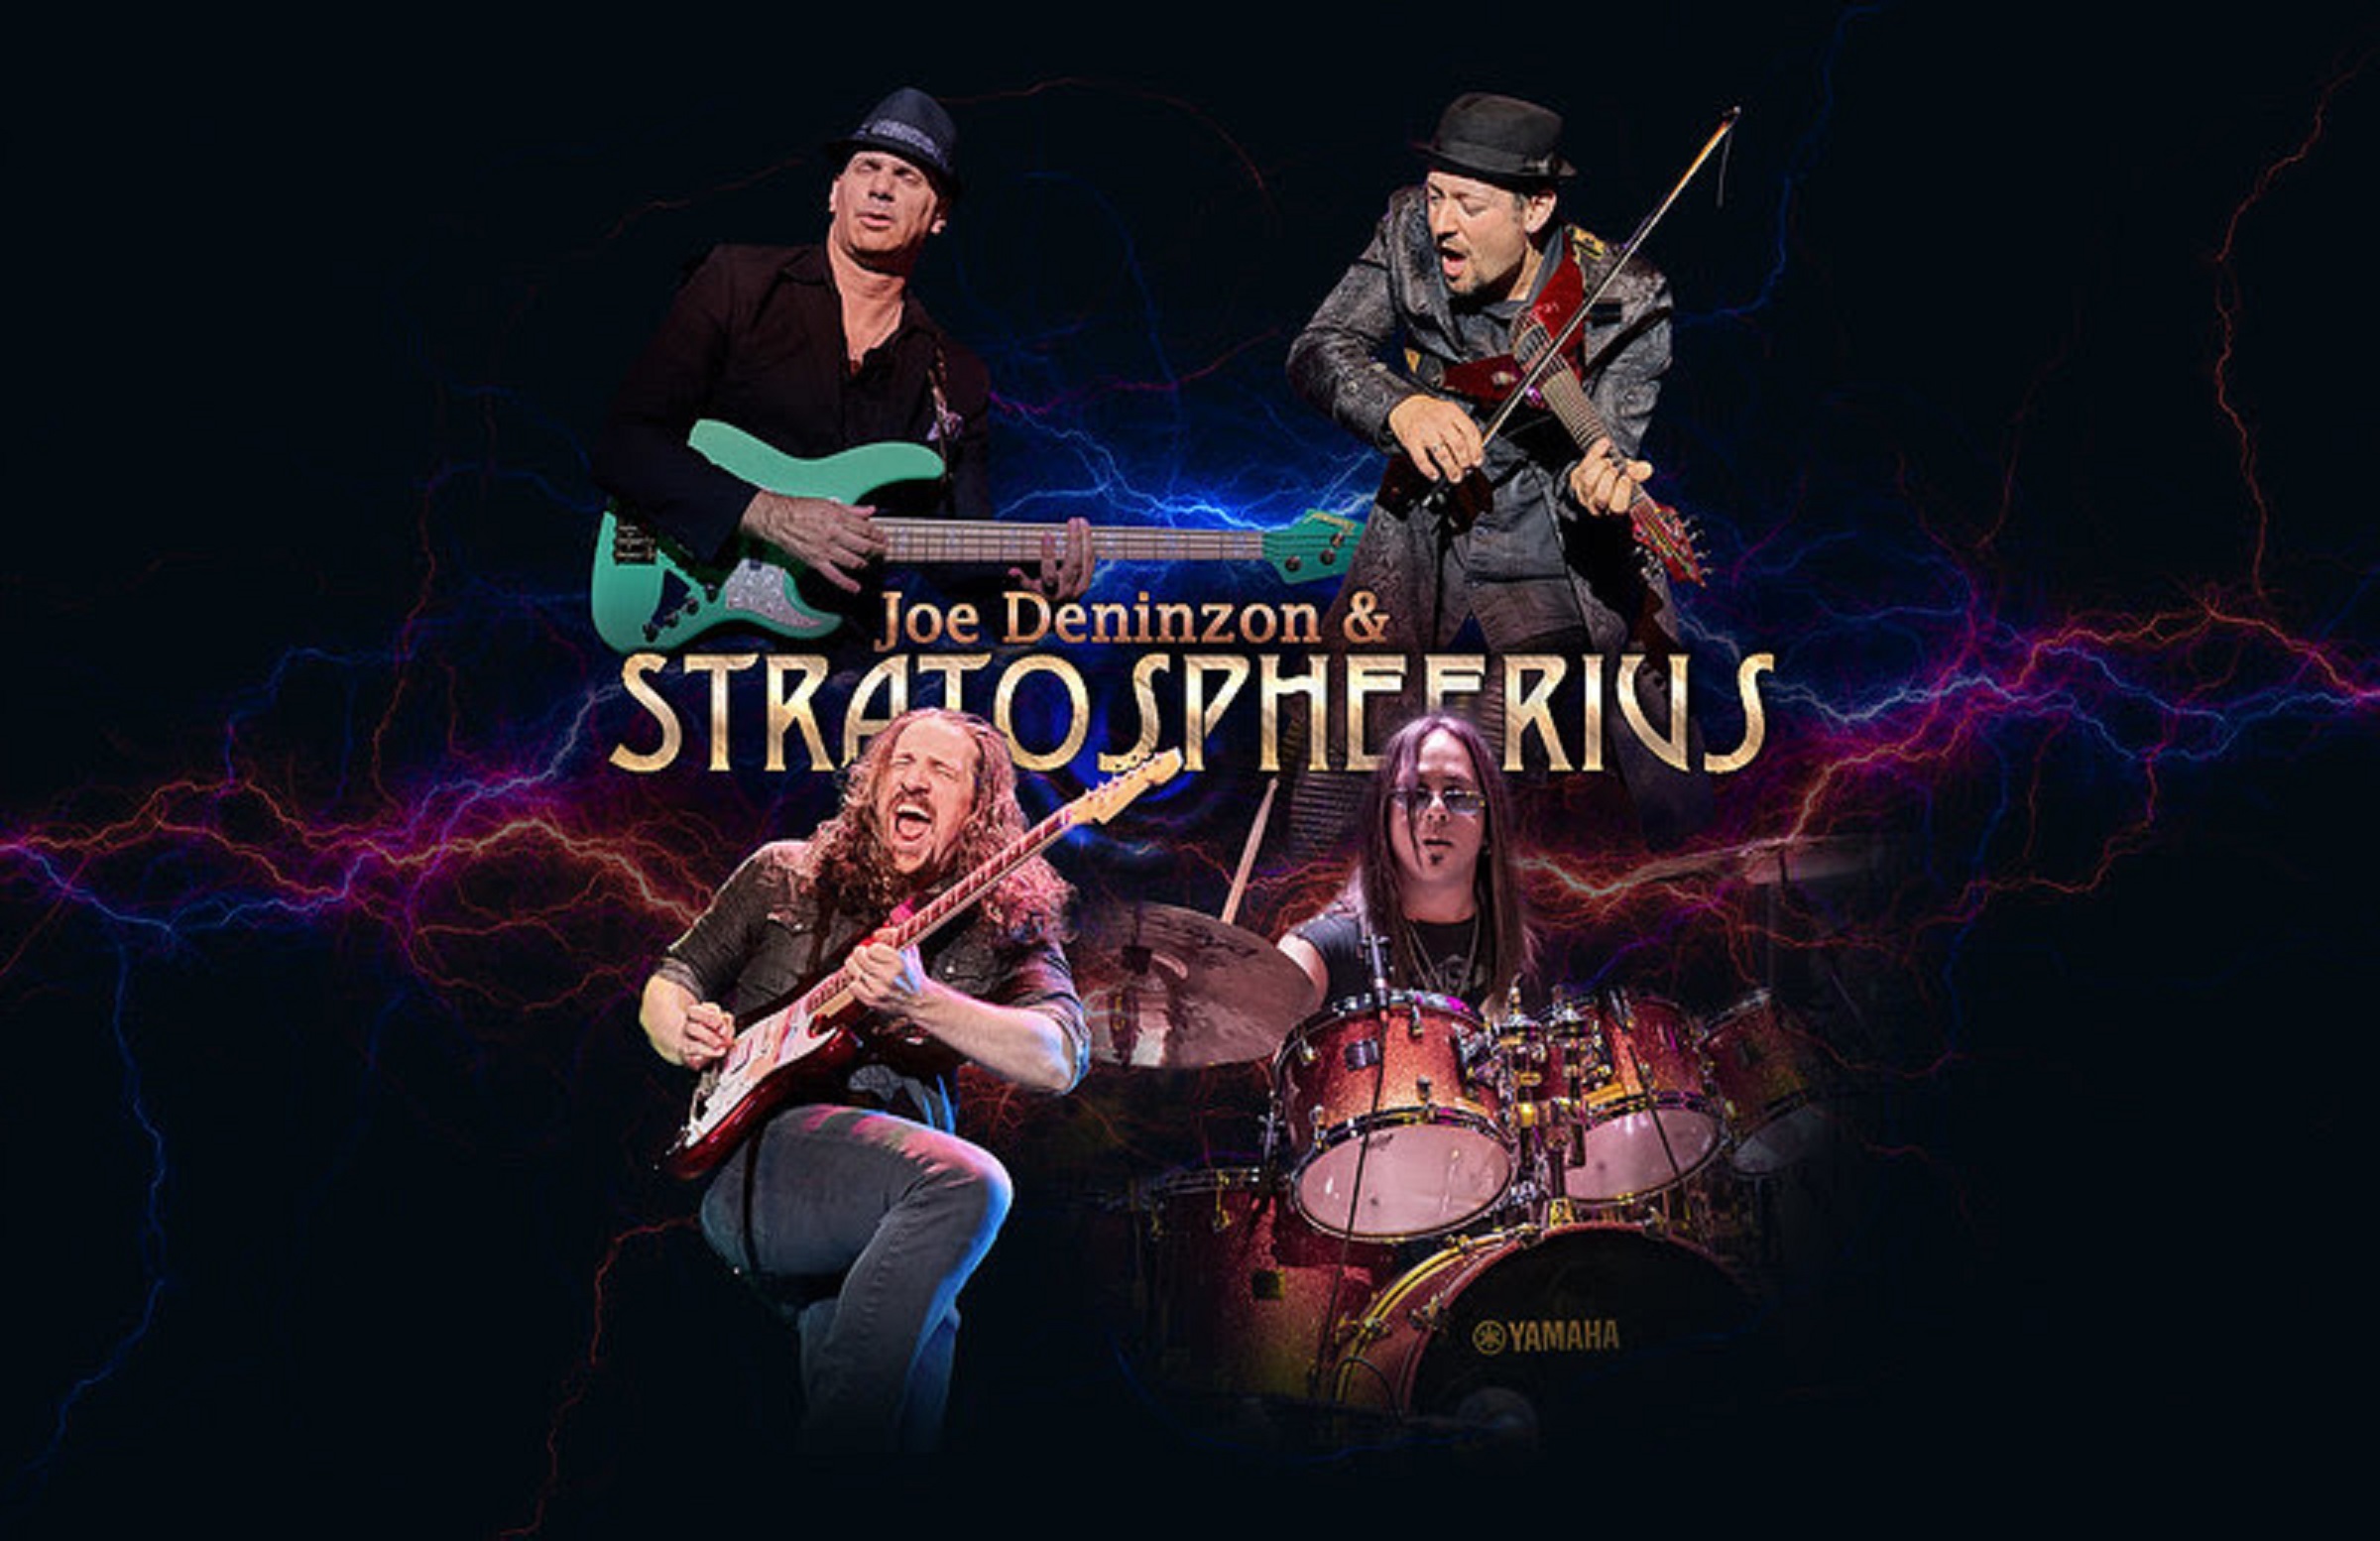 Joe Deninzon & Stratospheerius to Release Live Box Set on May 19